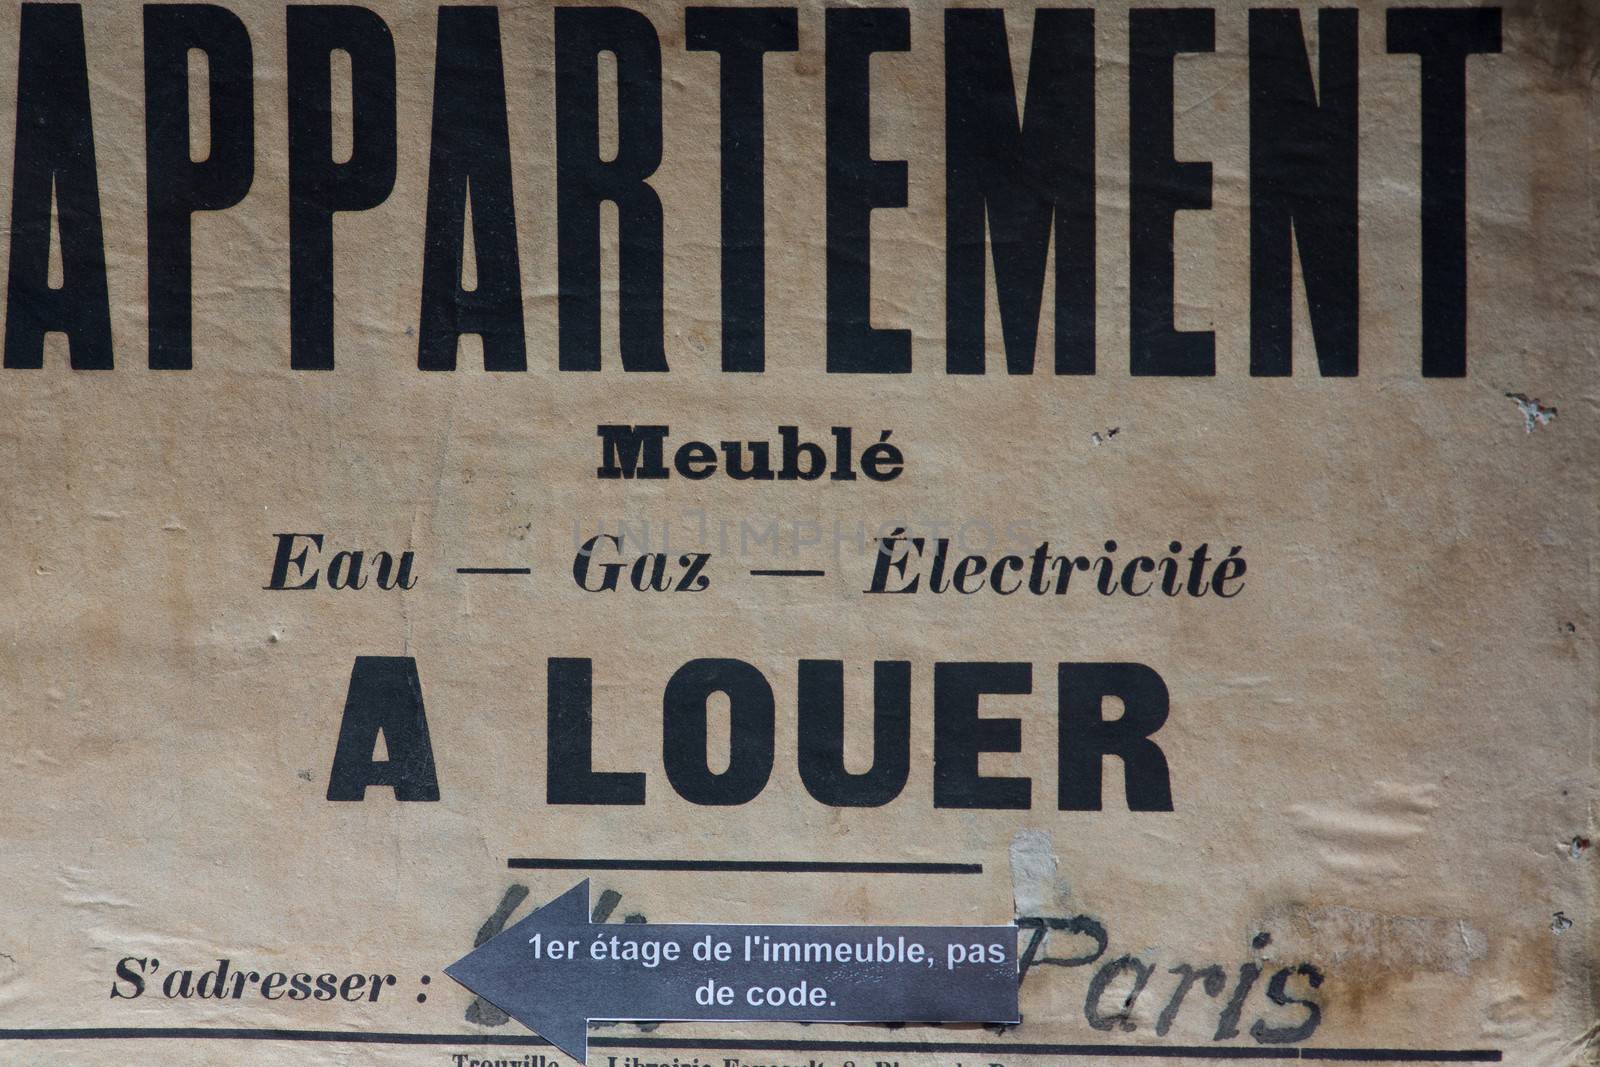 Vintage eal estate sign for rent apartment in Paris, France